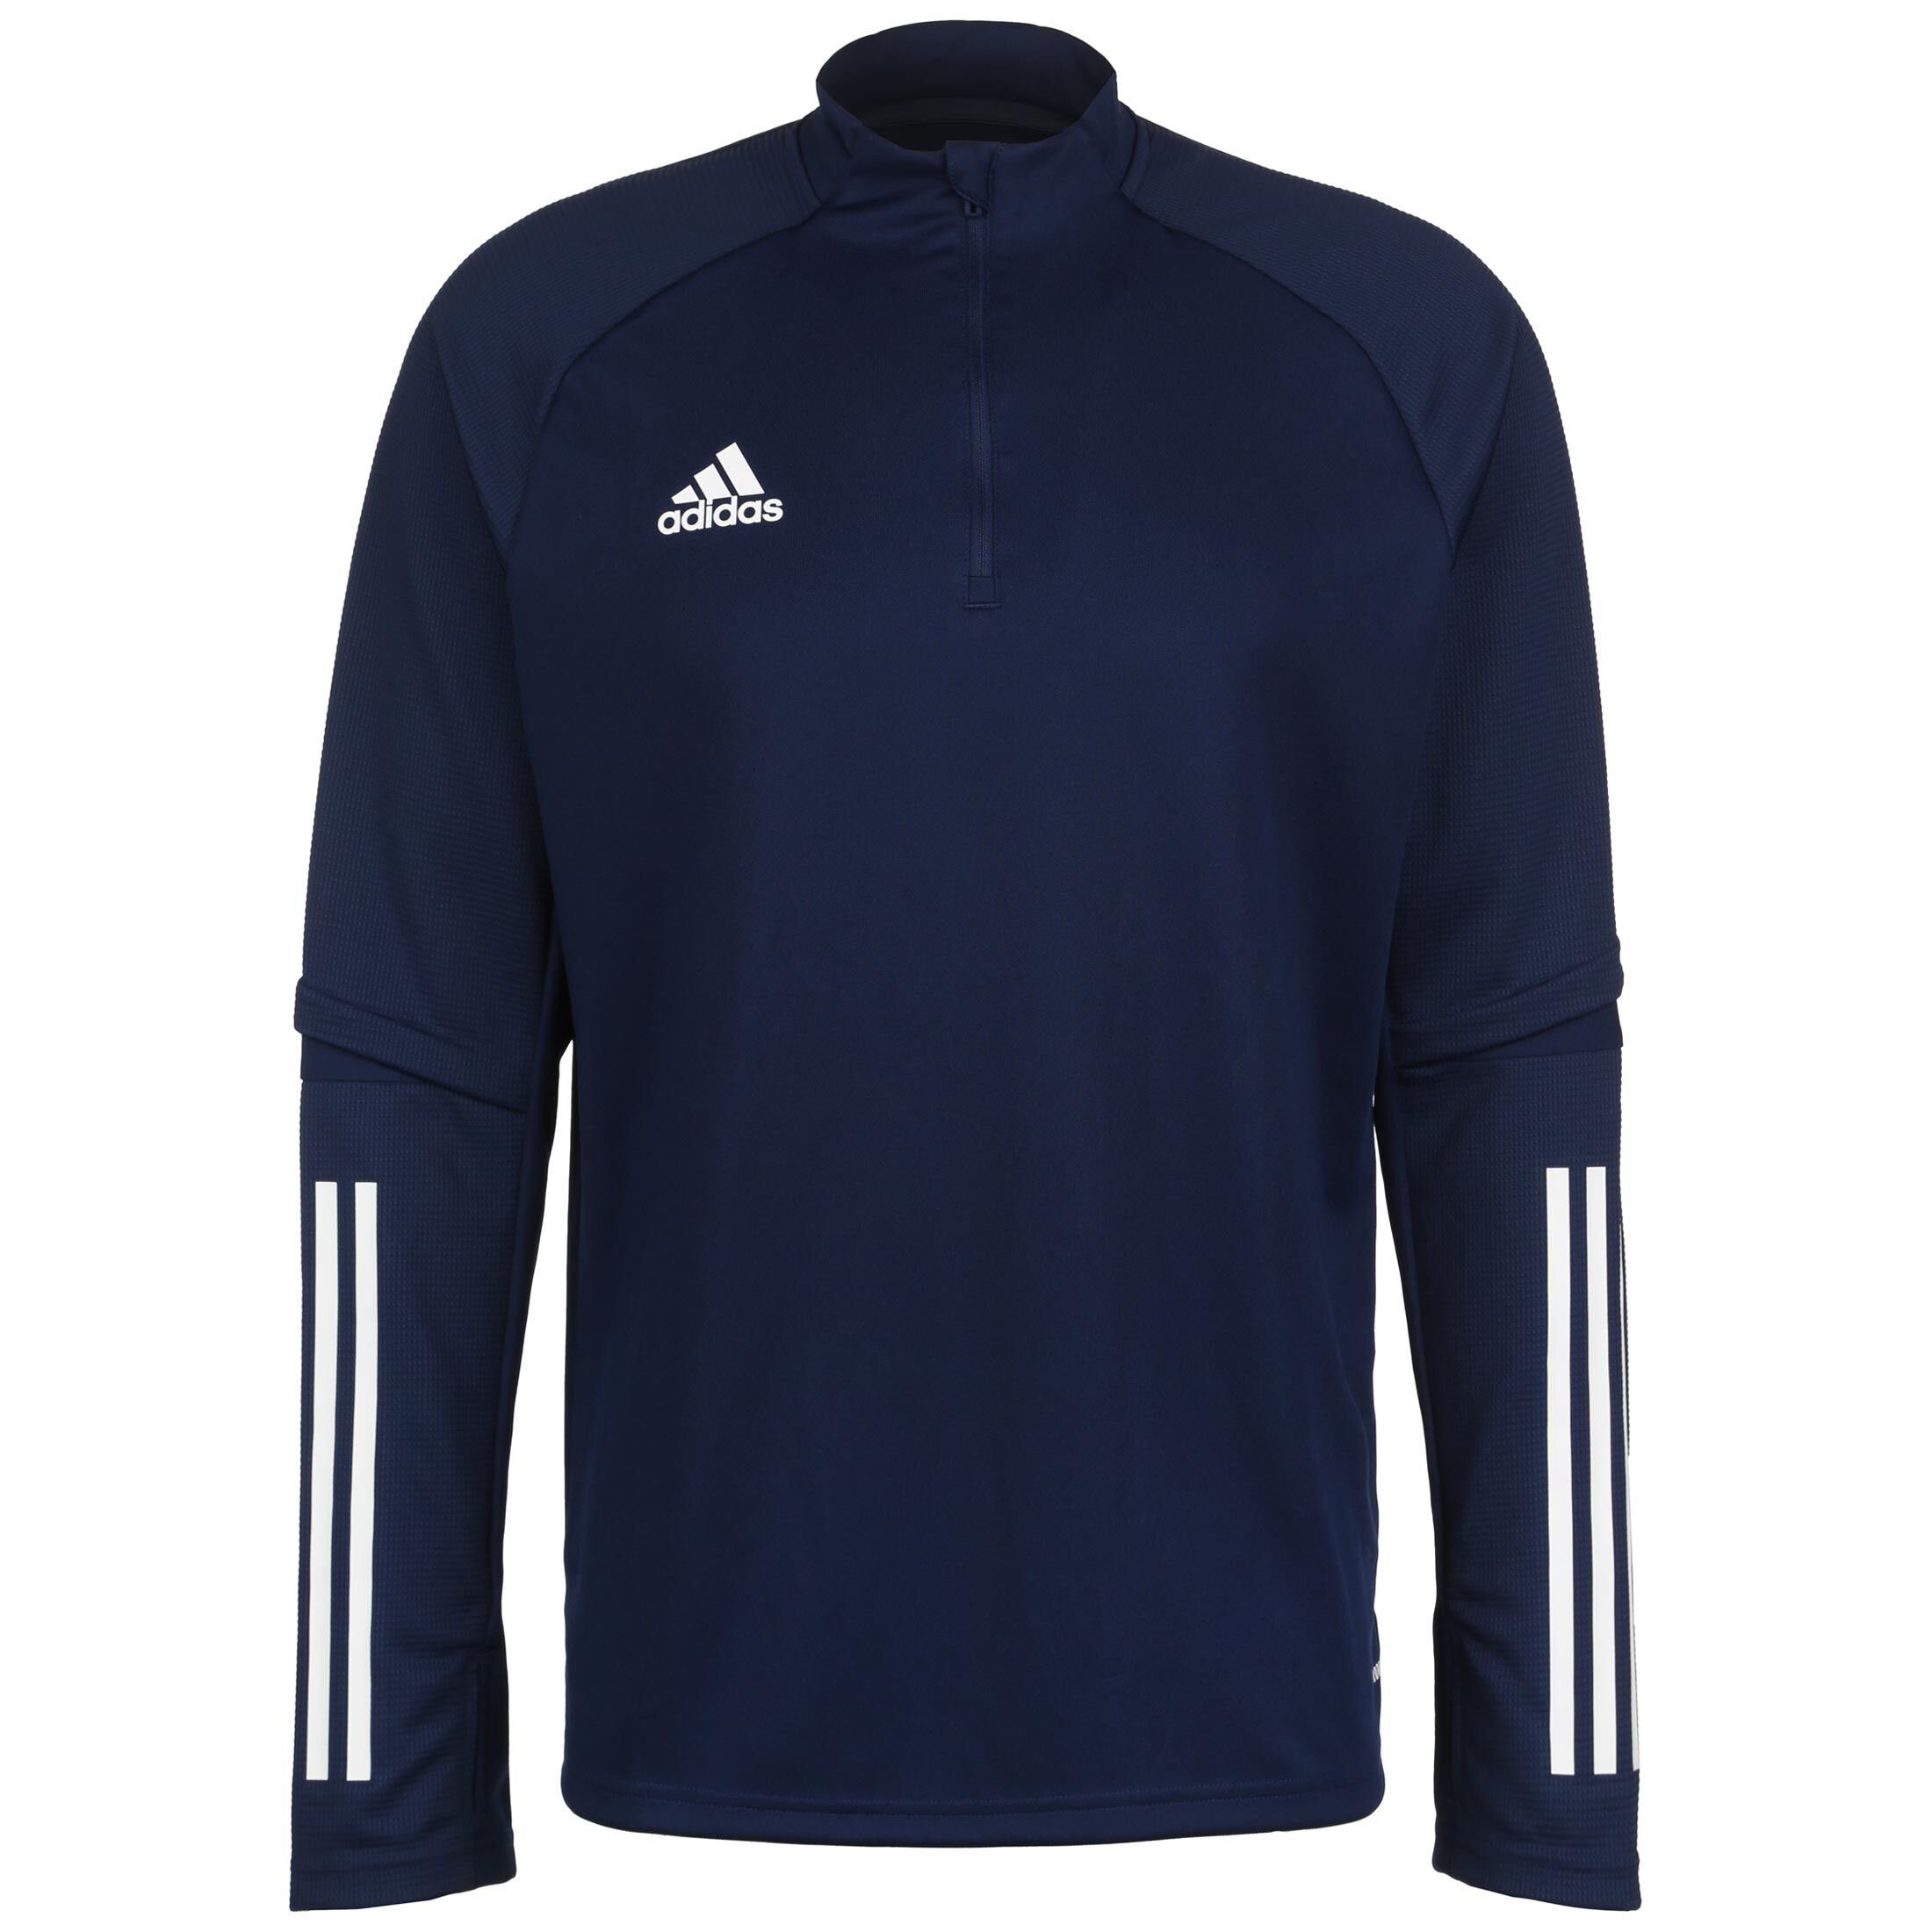 adidas Performance / weiß 20 Trainingssweat Condivo Herren Sweatshirt dunkelblau